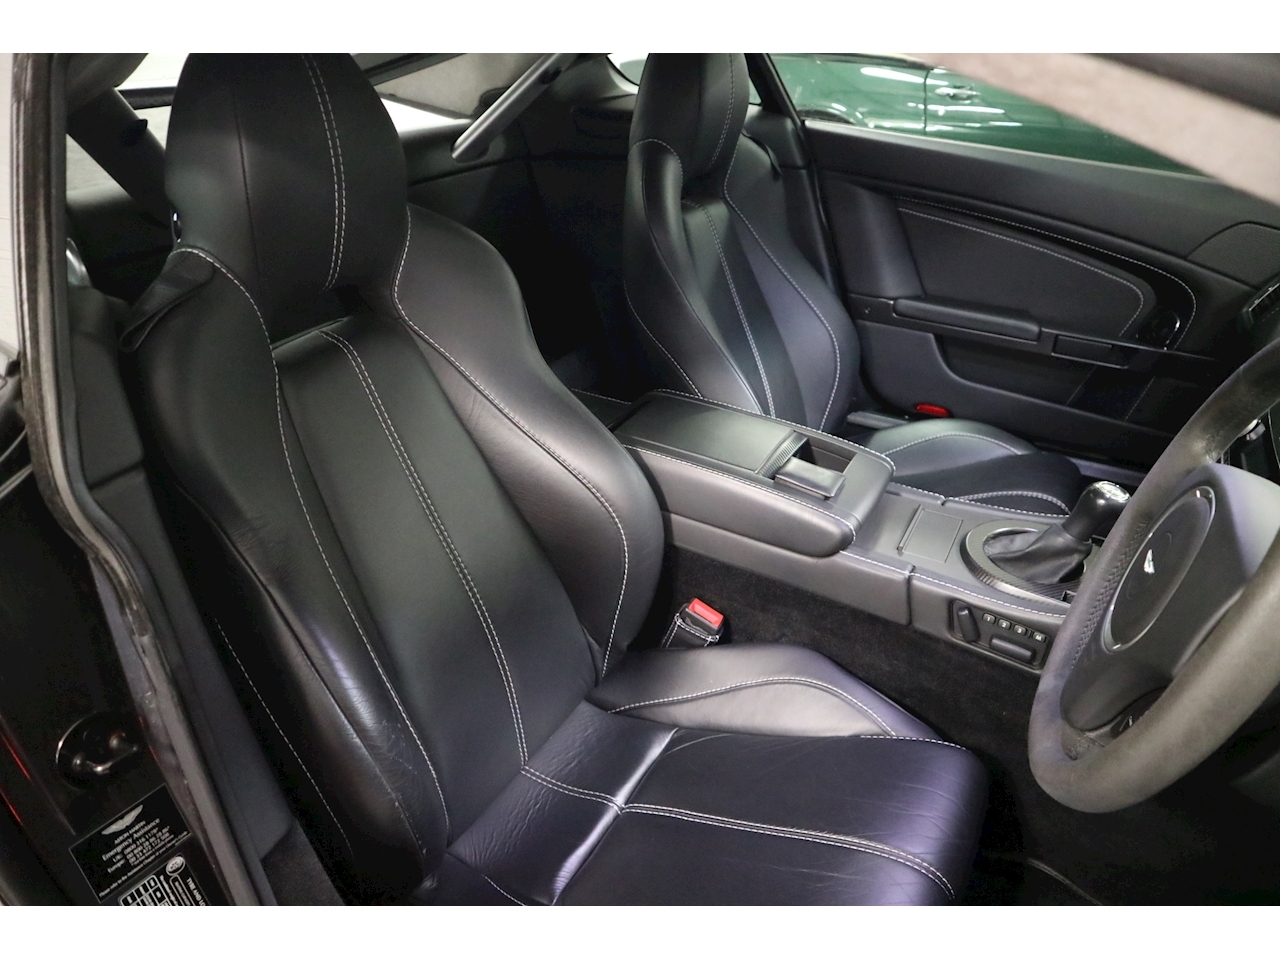 Vantage V8 Hatchback 4.7 Manual Petrol